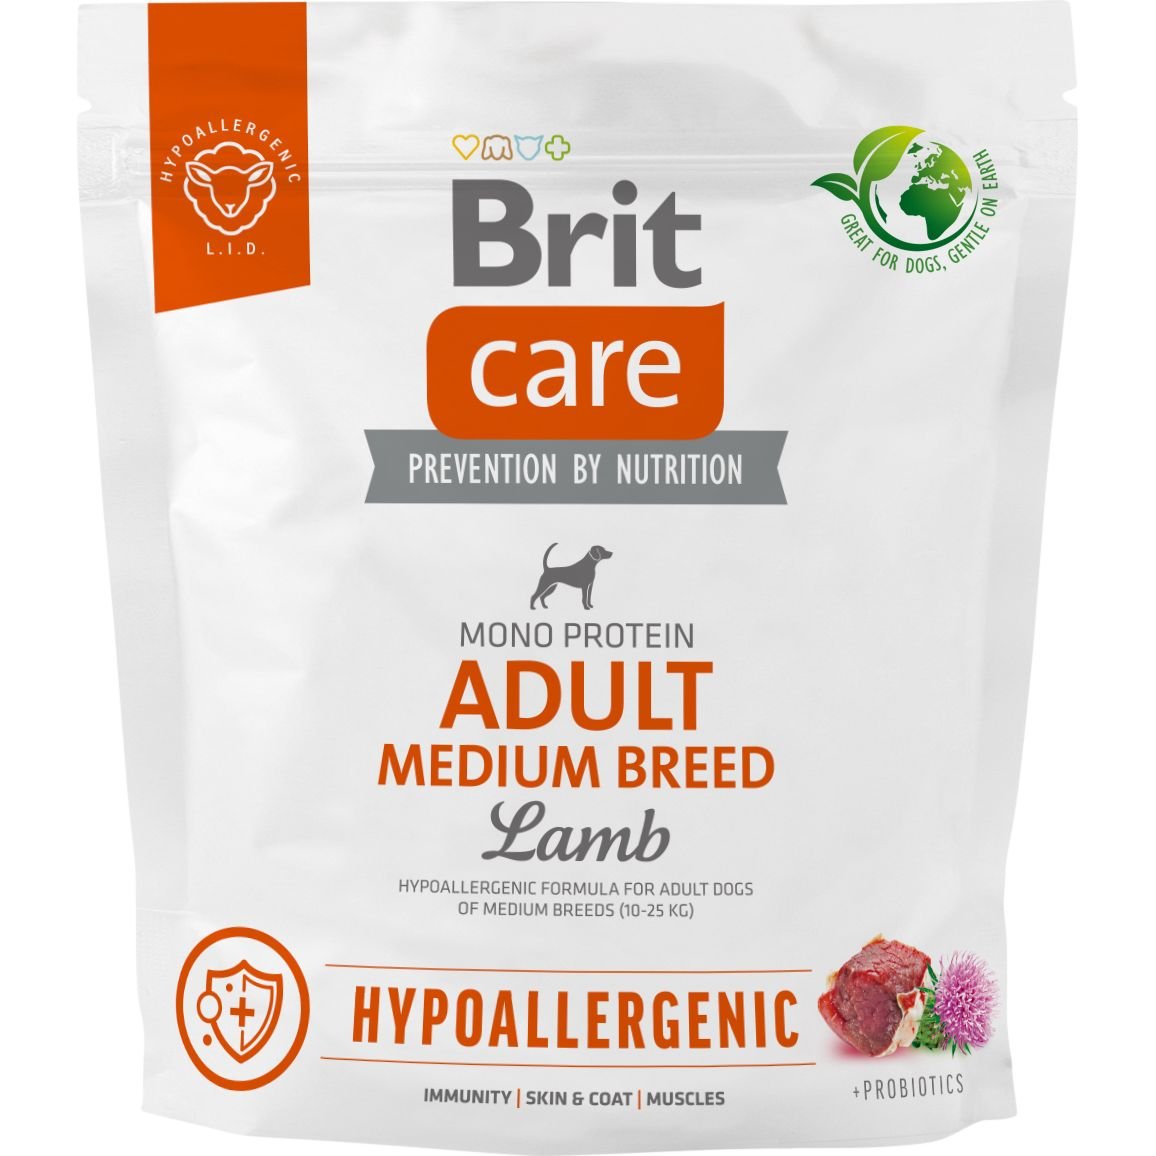 Сухой корм для собак средних пород Brit Care Dog Hypoallergenic Adult Medium Breed, гипоаллергенный, с ягненком, 1 кг - фото 1